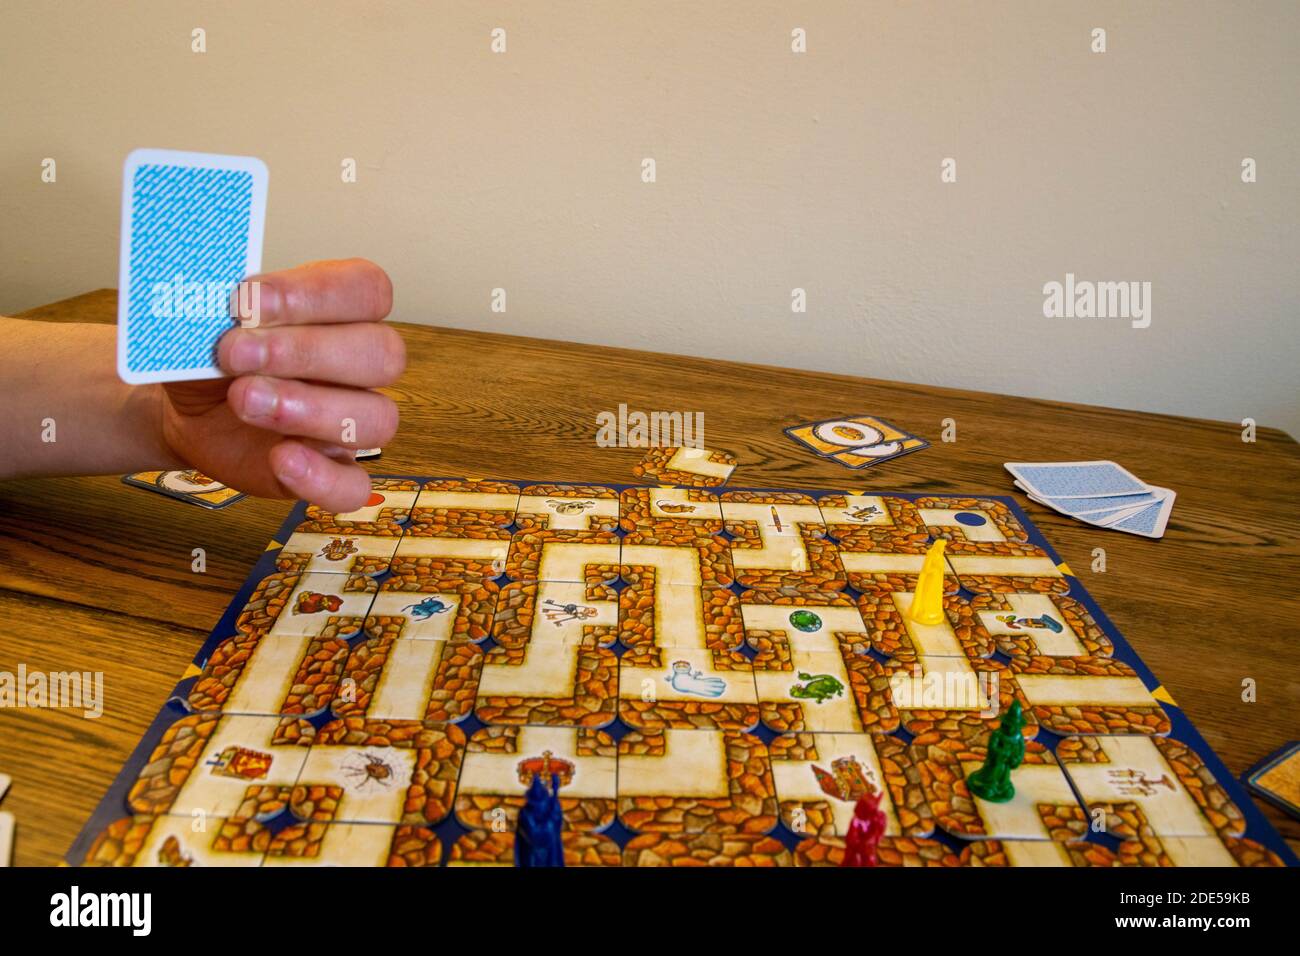 Durham, Großbritannien - 23. April 2020: Labyrinth Brettspiel. Die Spieler wechseln sich ab, um das Labyrinth nach ihren magischen Objekten und Charakteren durch sorgfältig mov zu durchsuchen Stockfoto